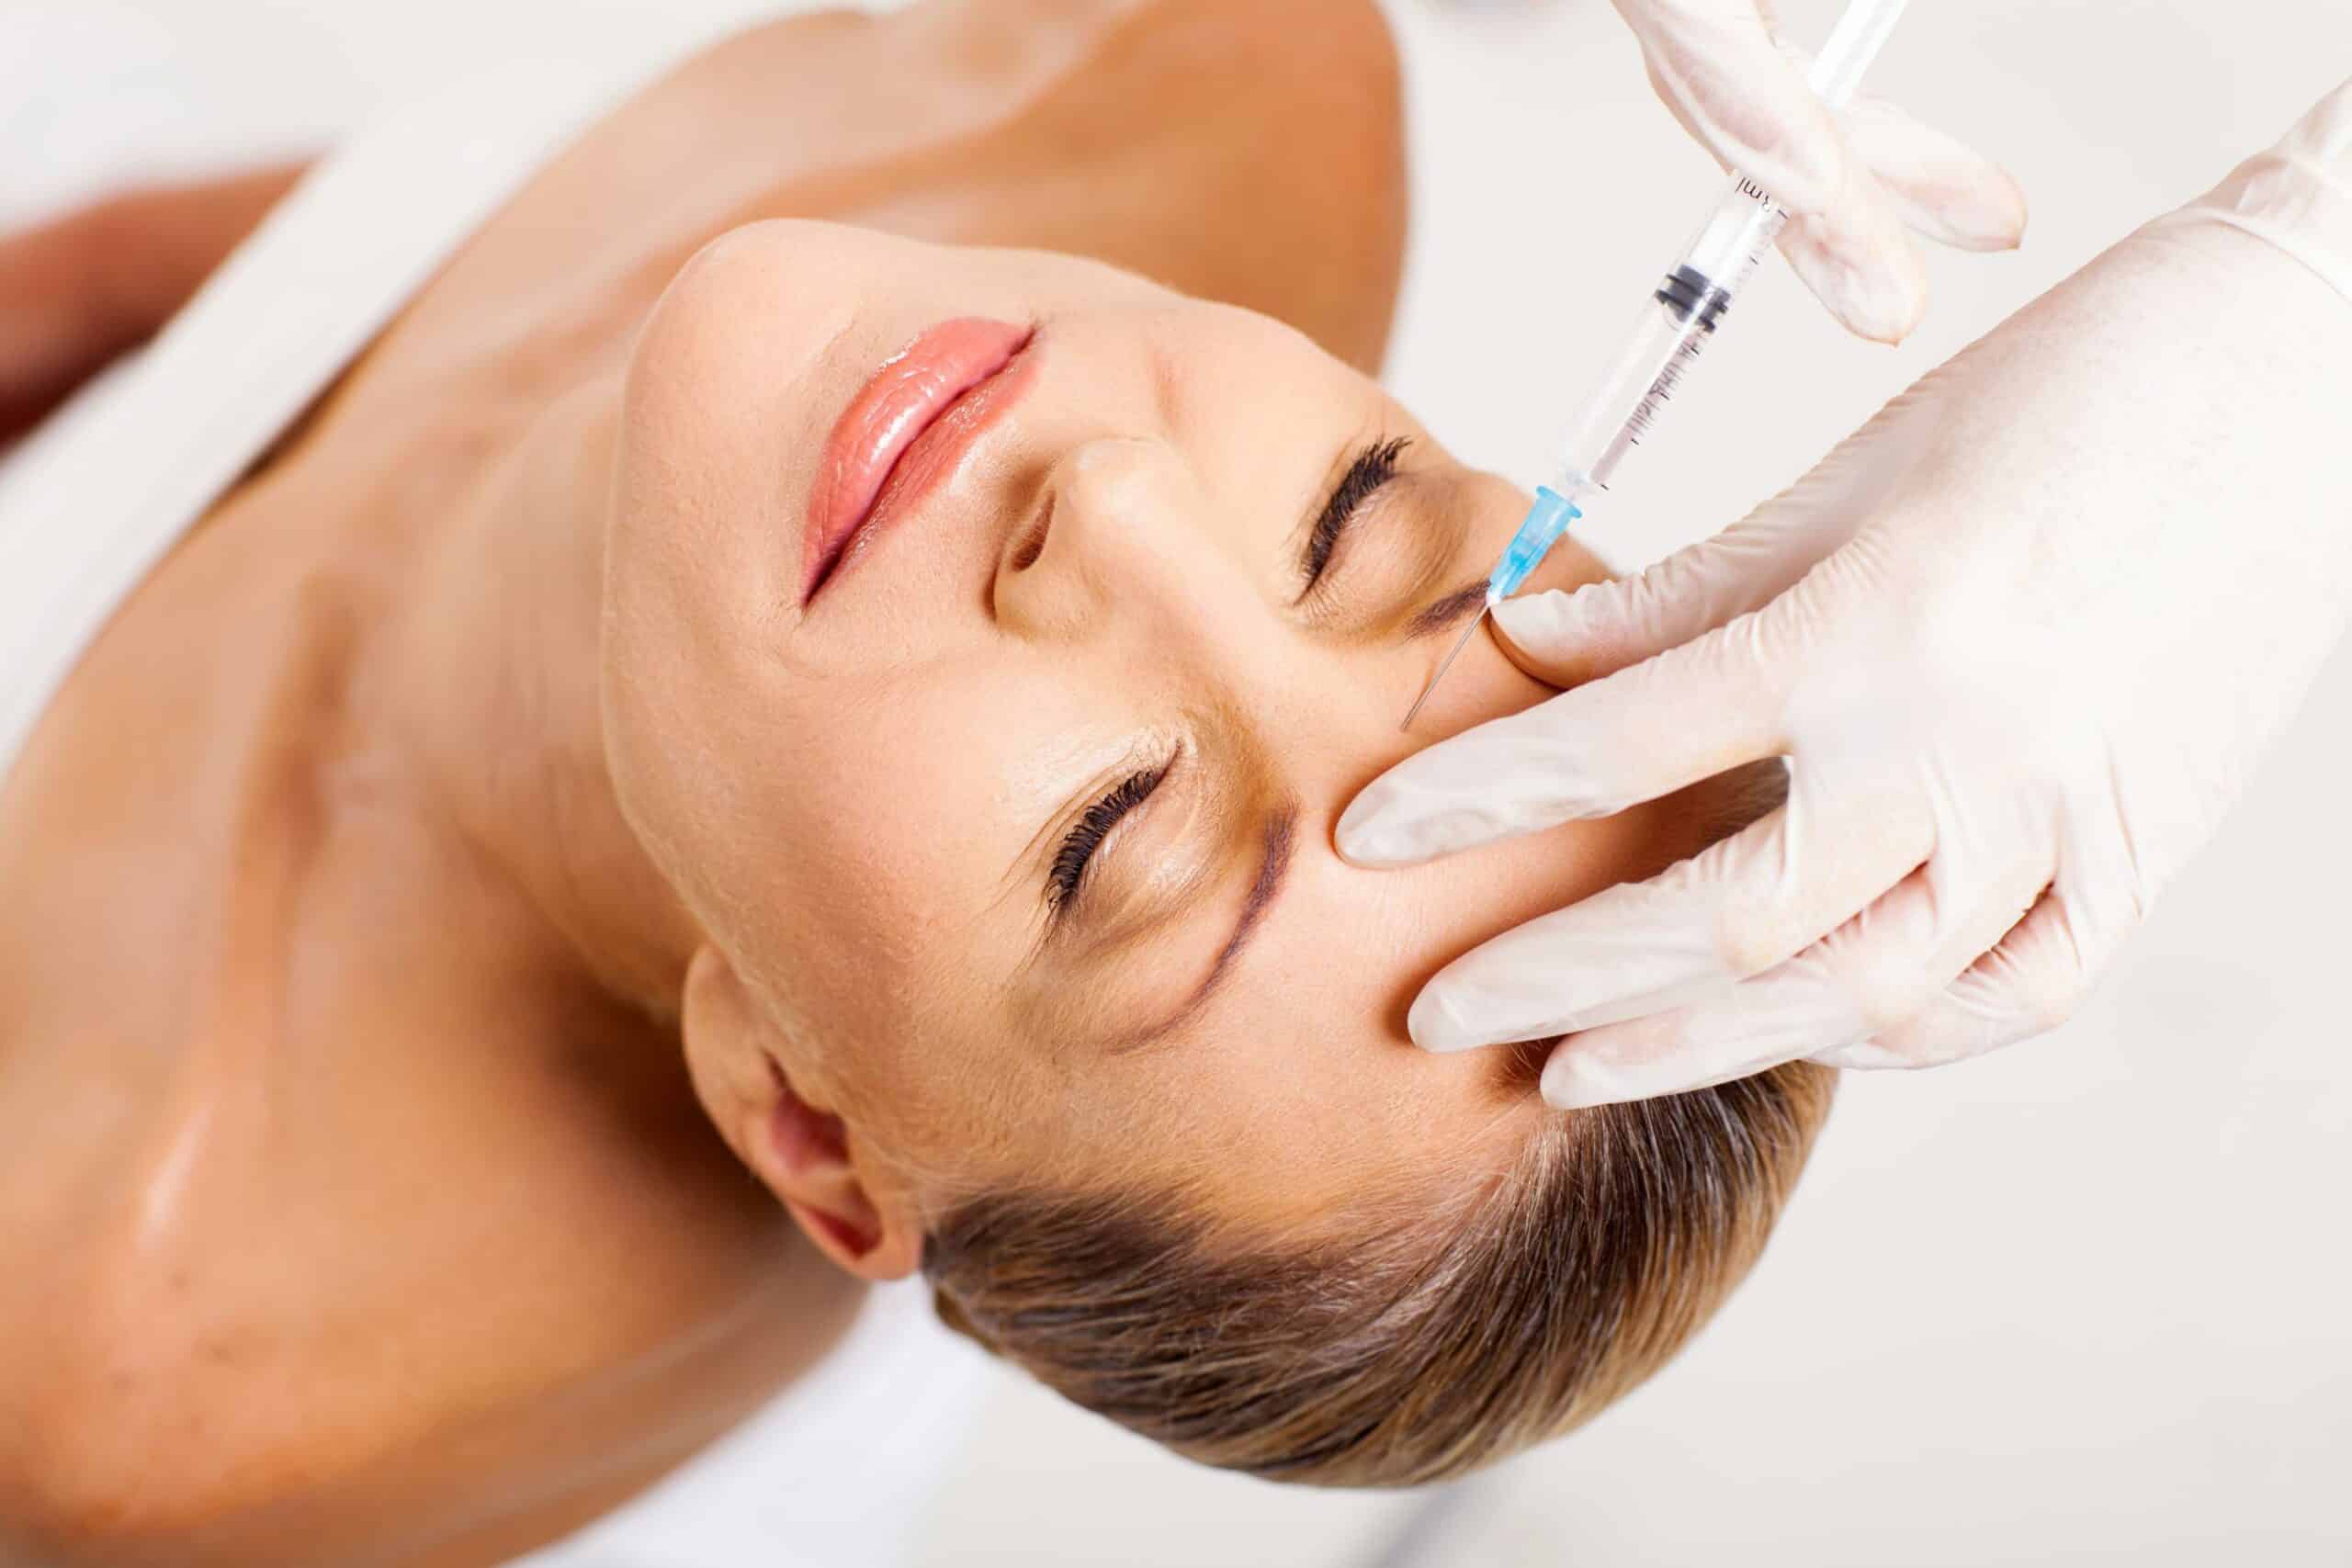 Botox et rajeunissement du visage - Docteur Luneau